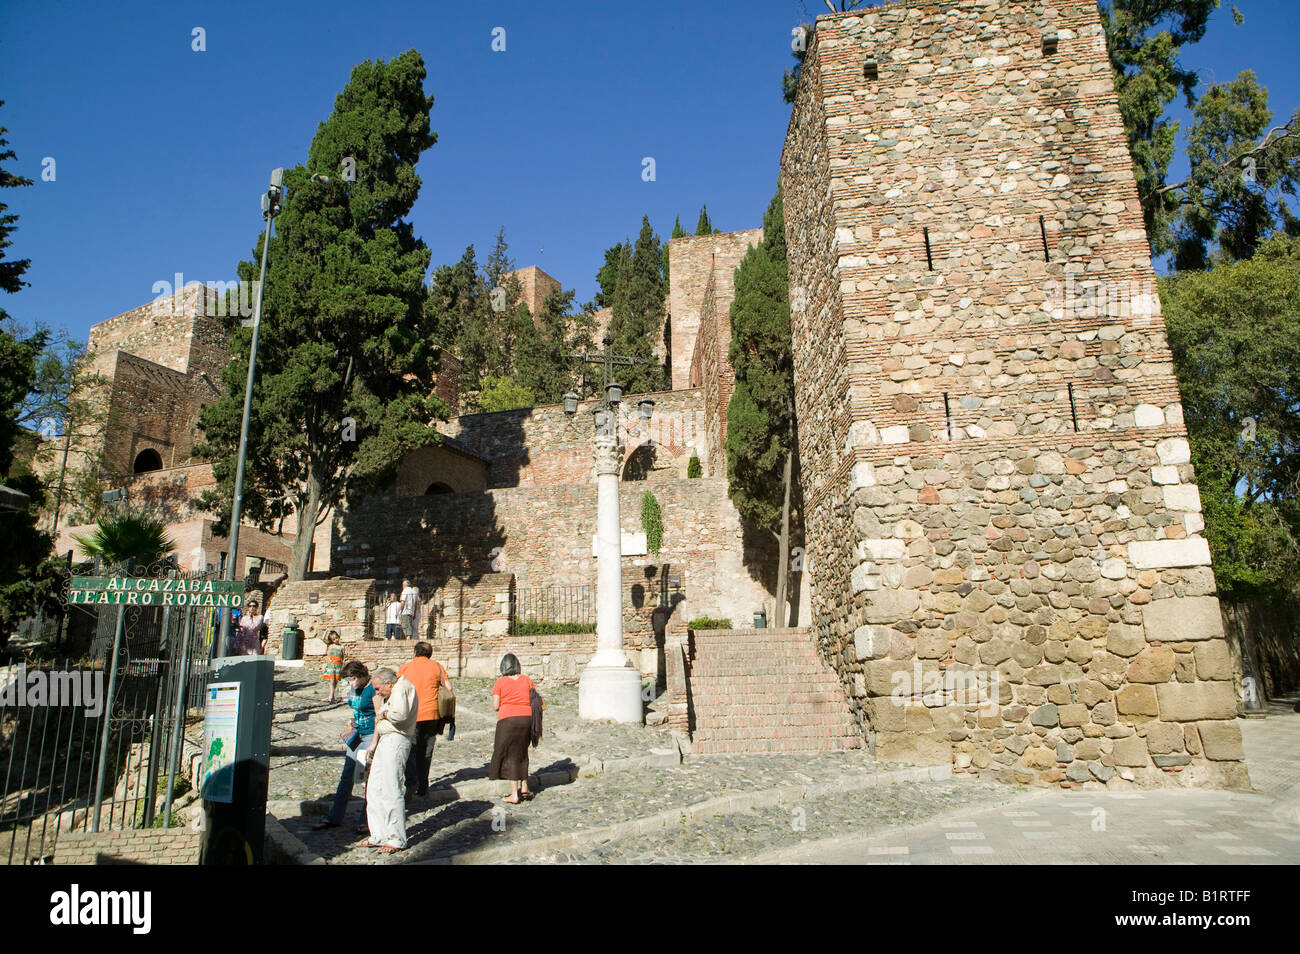 Spagna, Malaga, Andalusia, teatro romano, destinazione, viaggi, turismo, vecchio, Europa, romana, Alcazaba, archeologia,l'arte,architettura Foto Stock